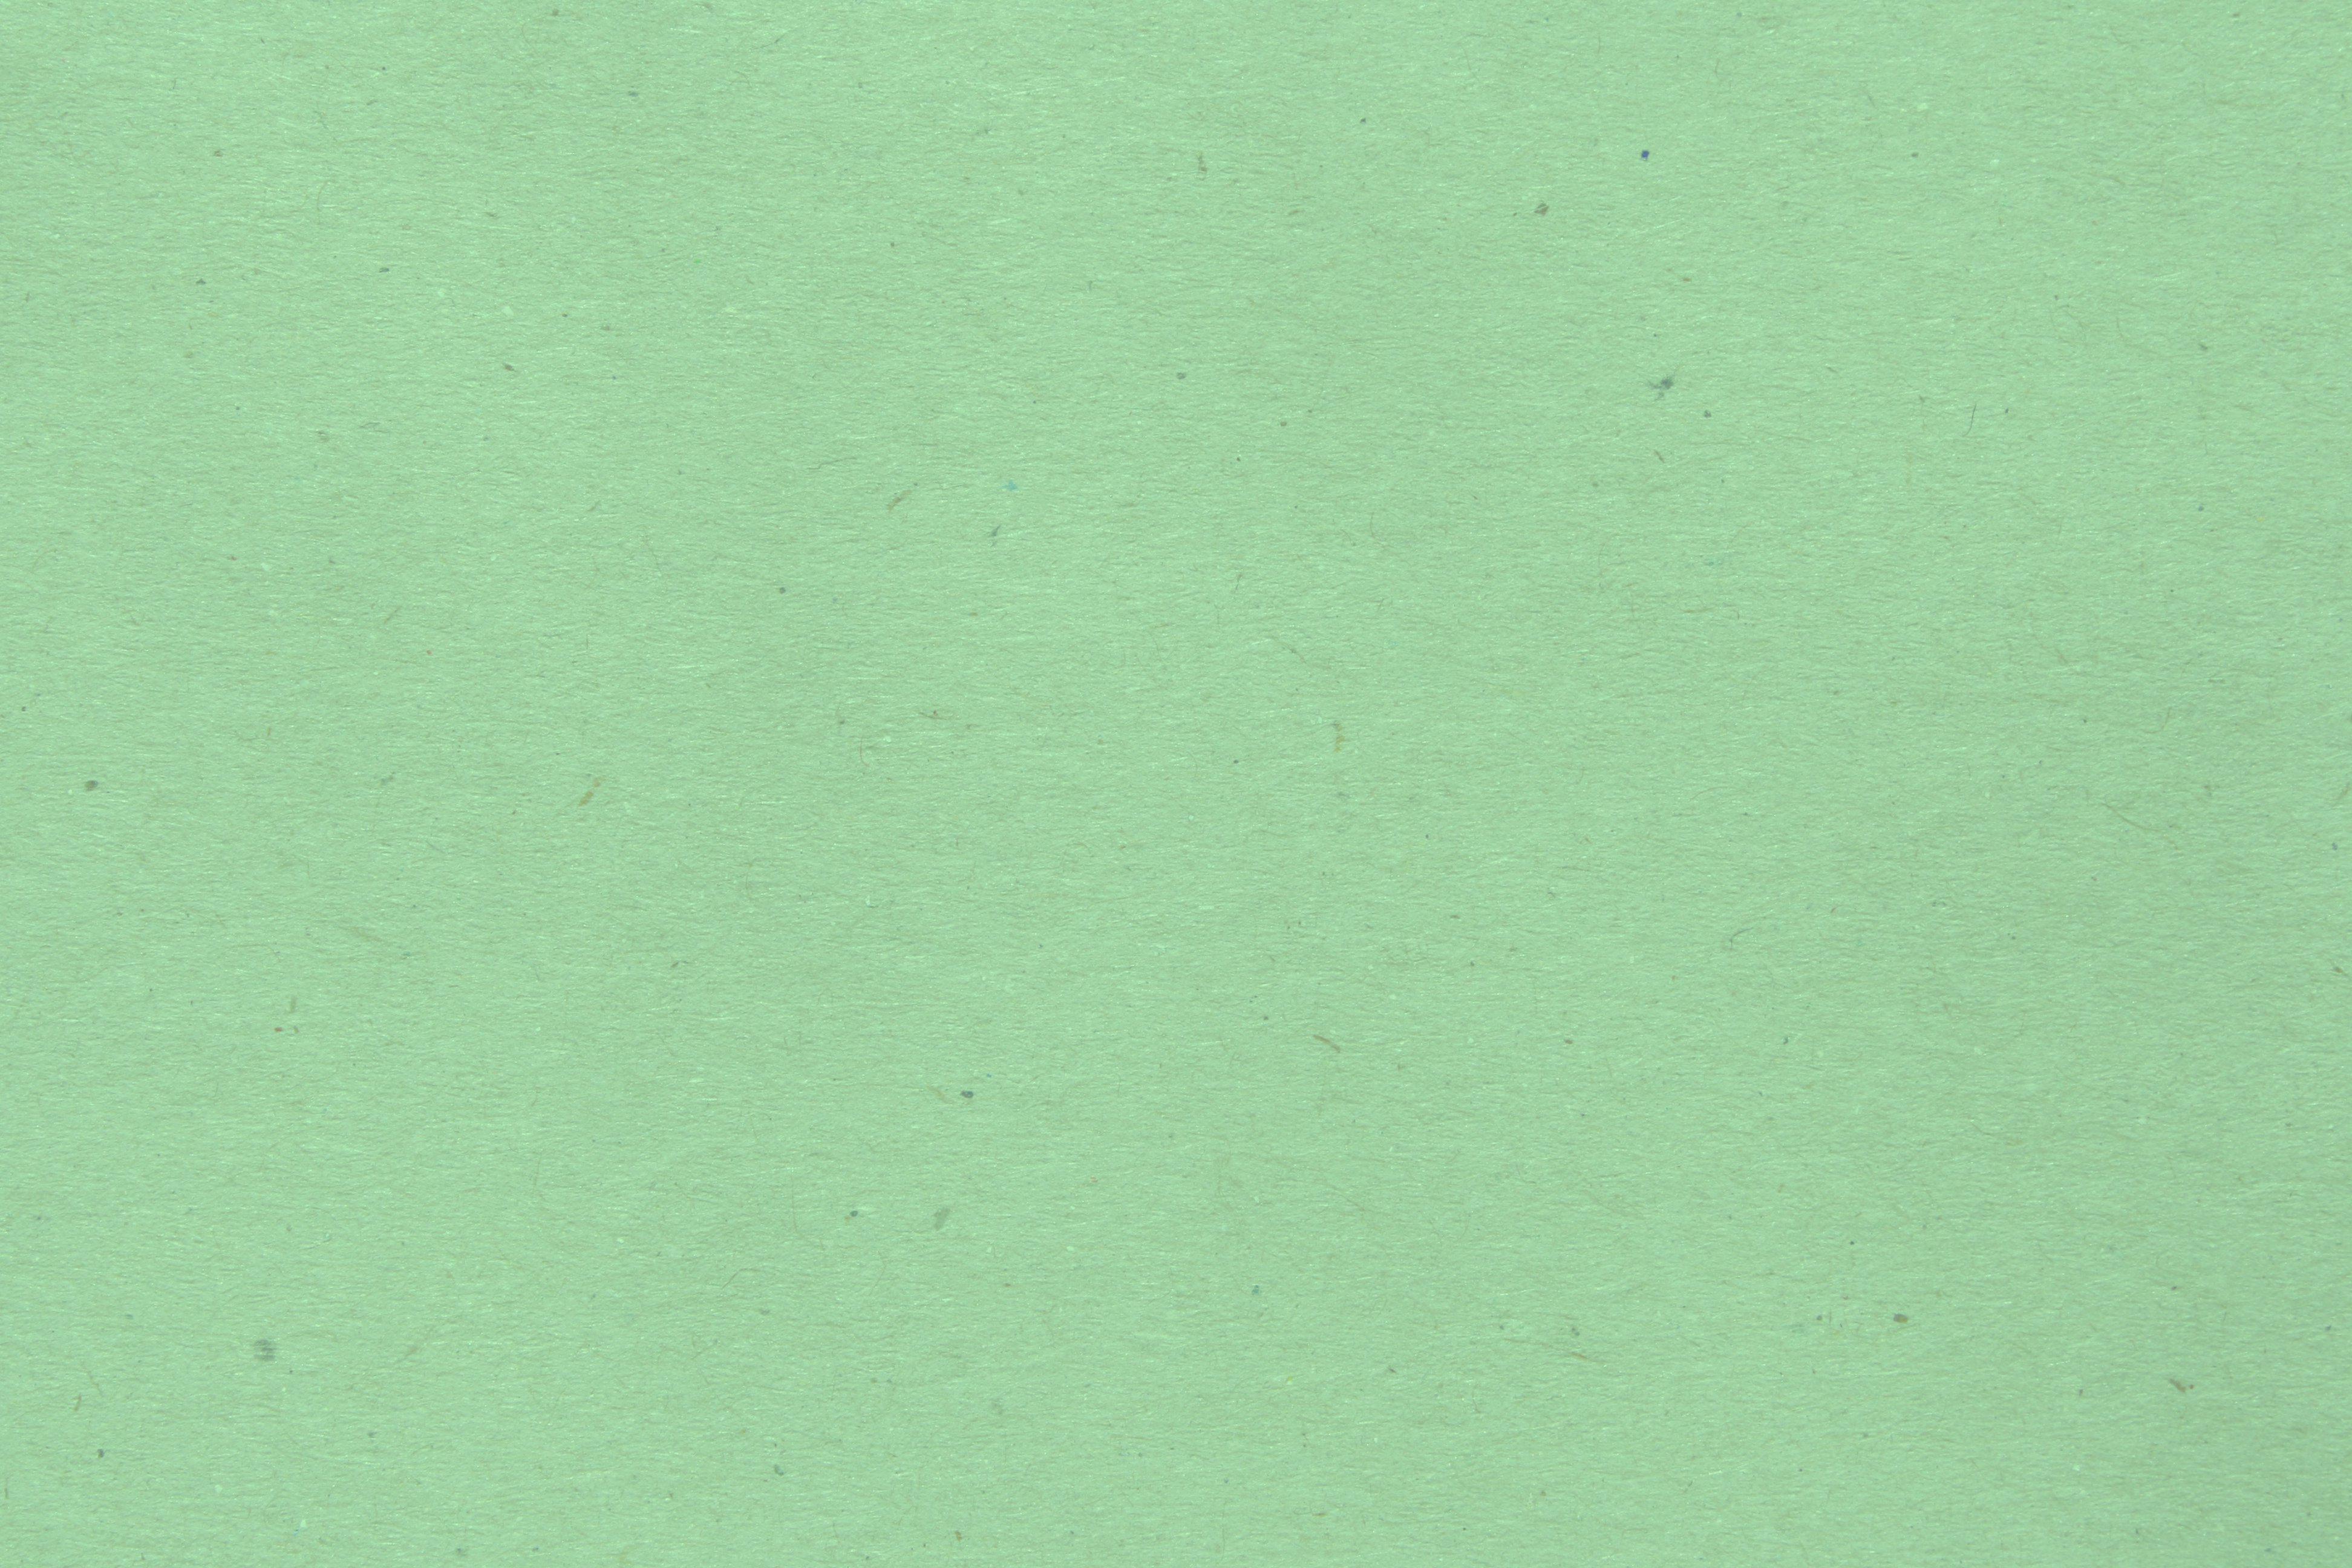 Mint Green Paper Texture Picture | Free Photograph | Photos Public Domain